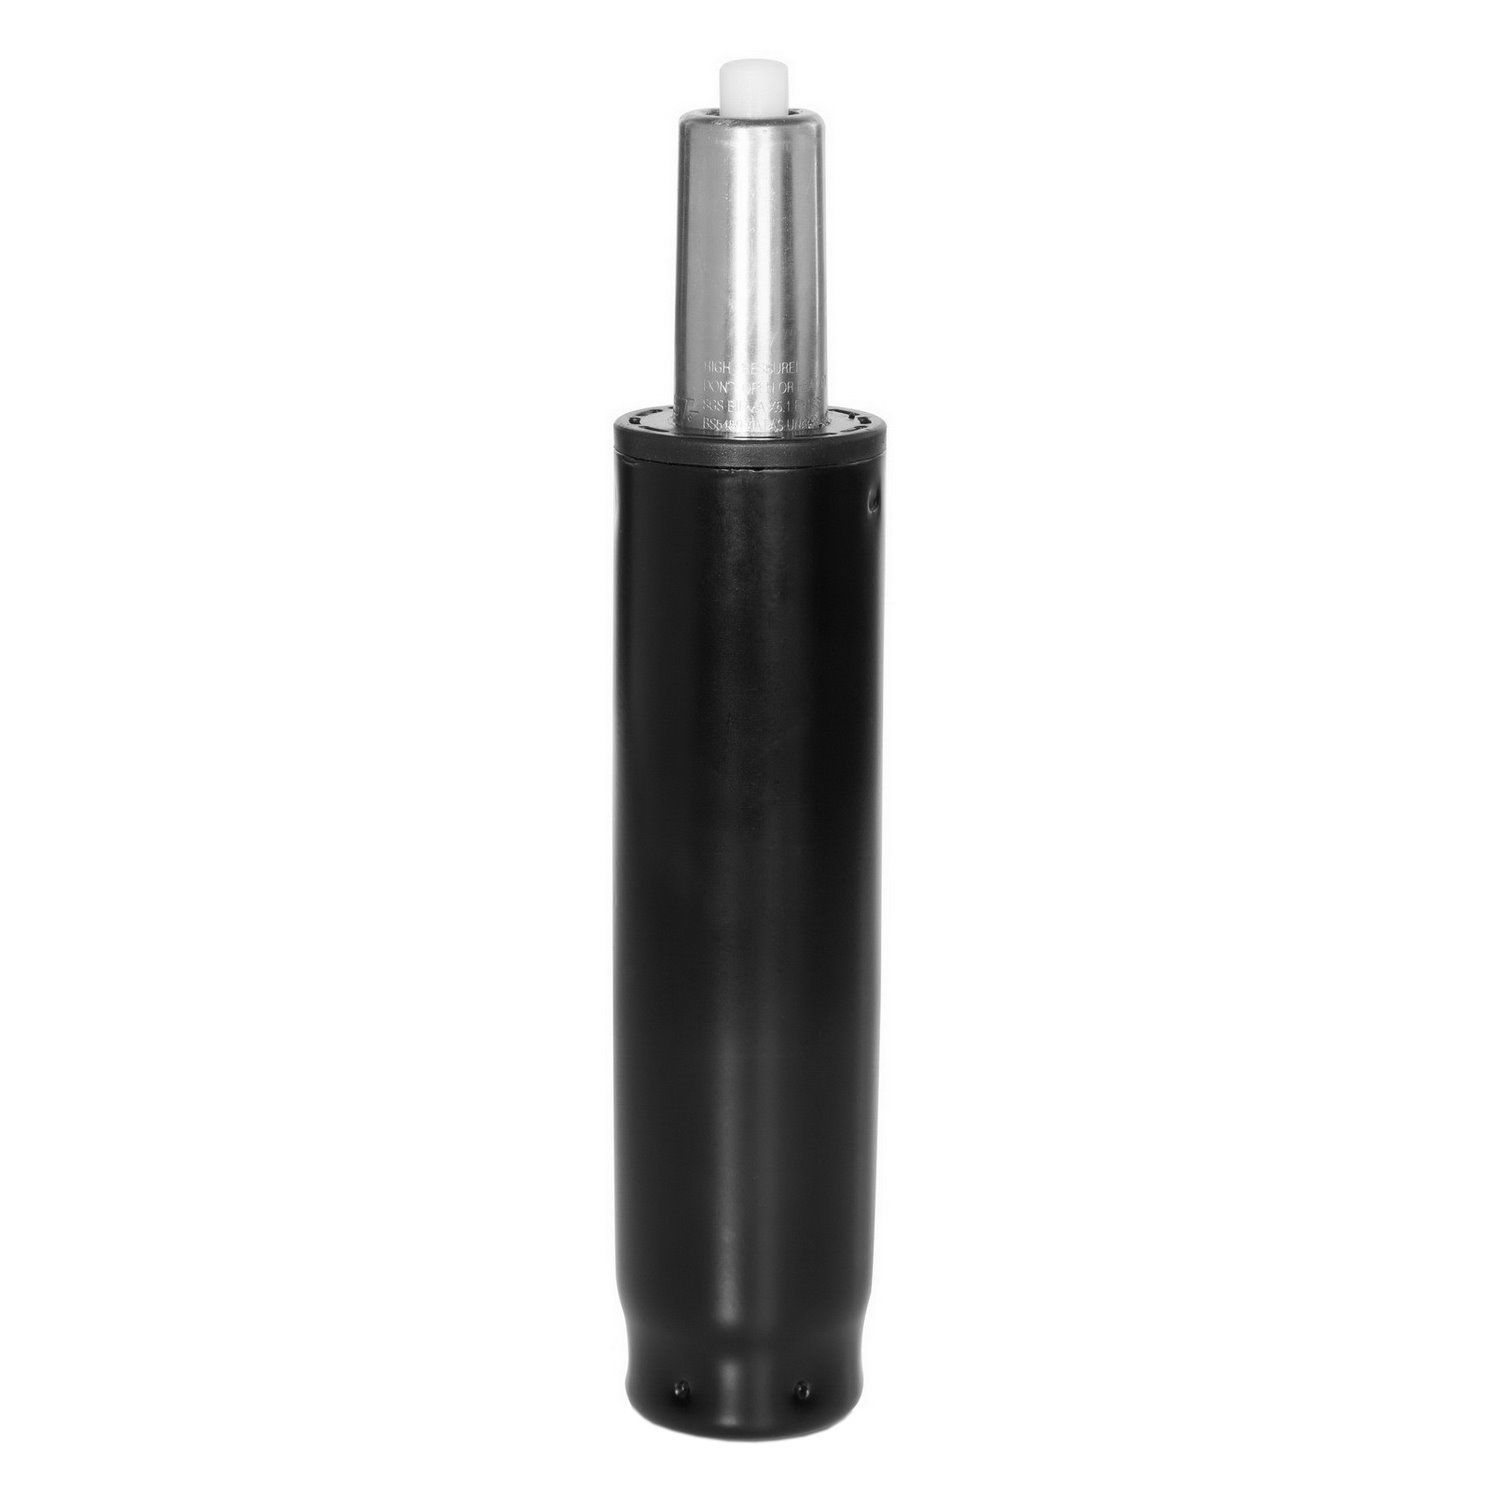 Gasfeder / Gasdruckfeder S - chrom, 25-32 cm hjh OFFICE